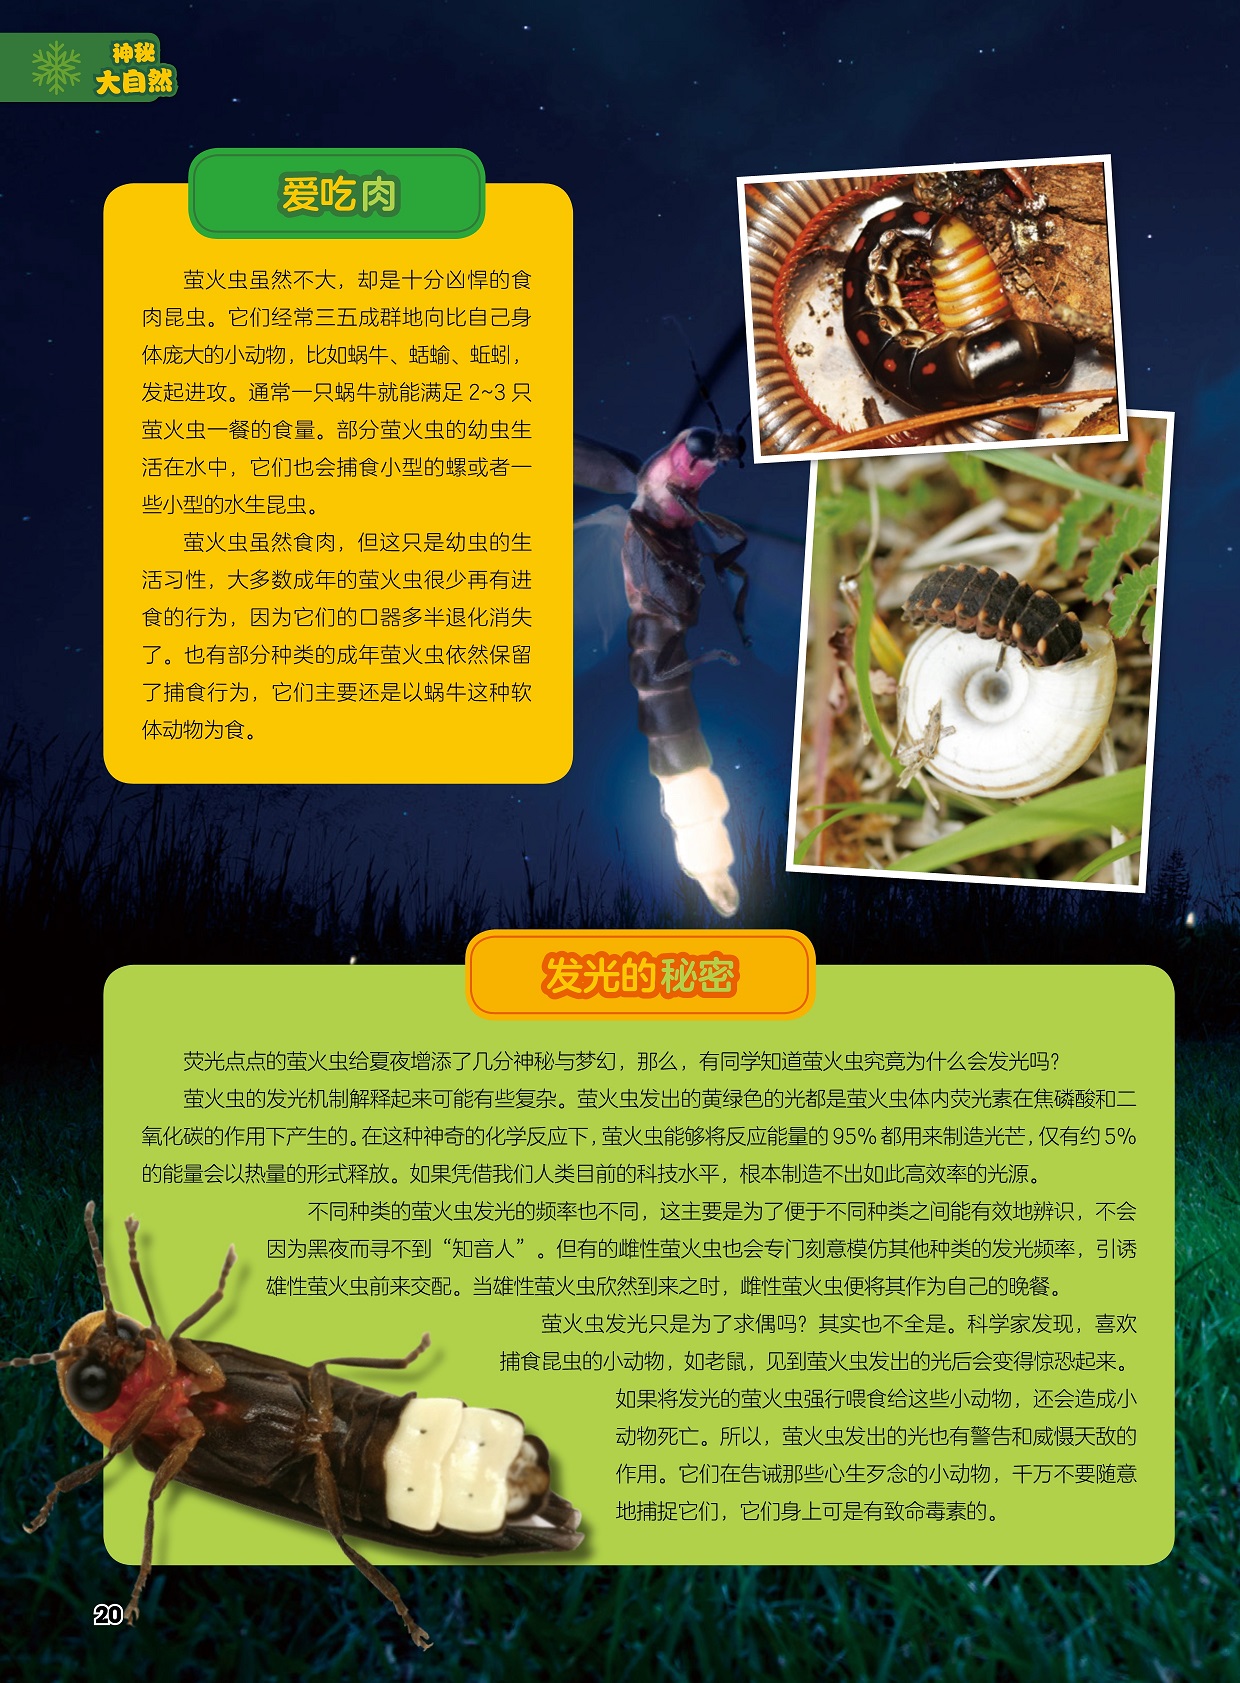 萤火虫是十分凶悍的食肉昆虫,萤火虫发出的光也有警告和威慑天敌的作用